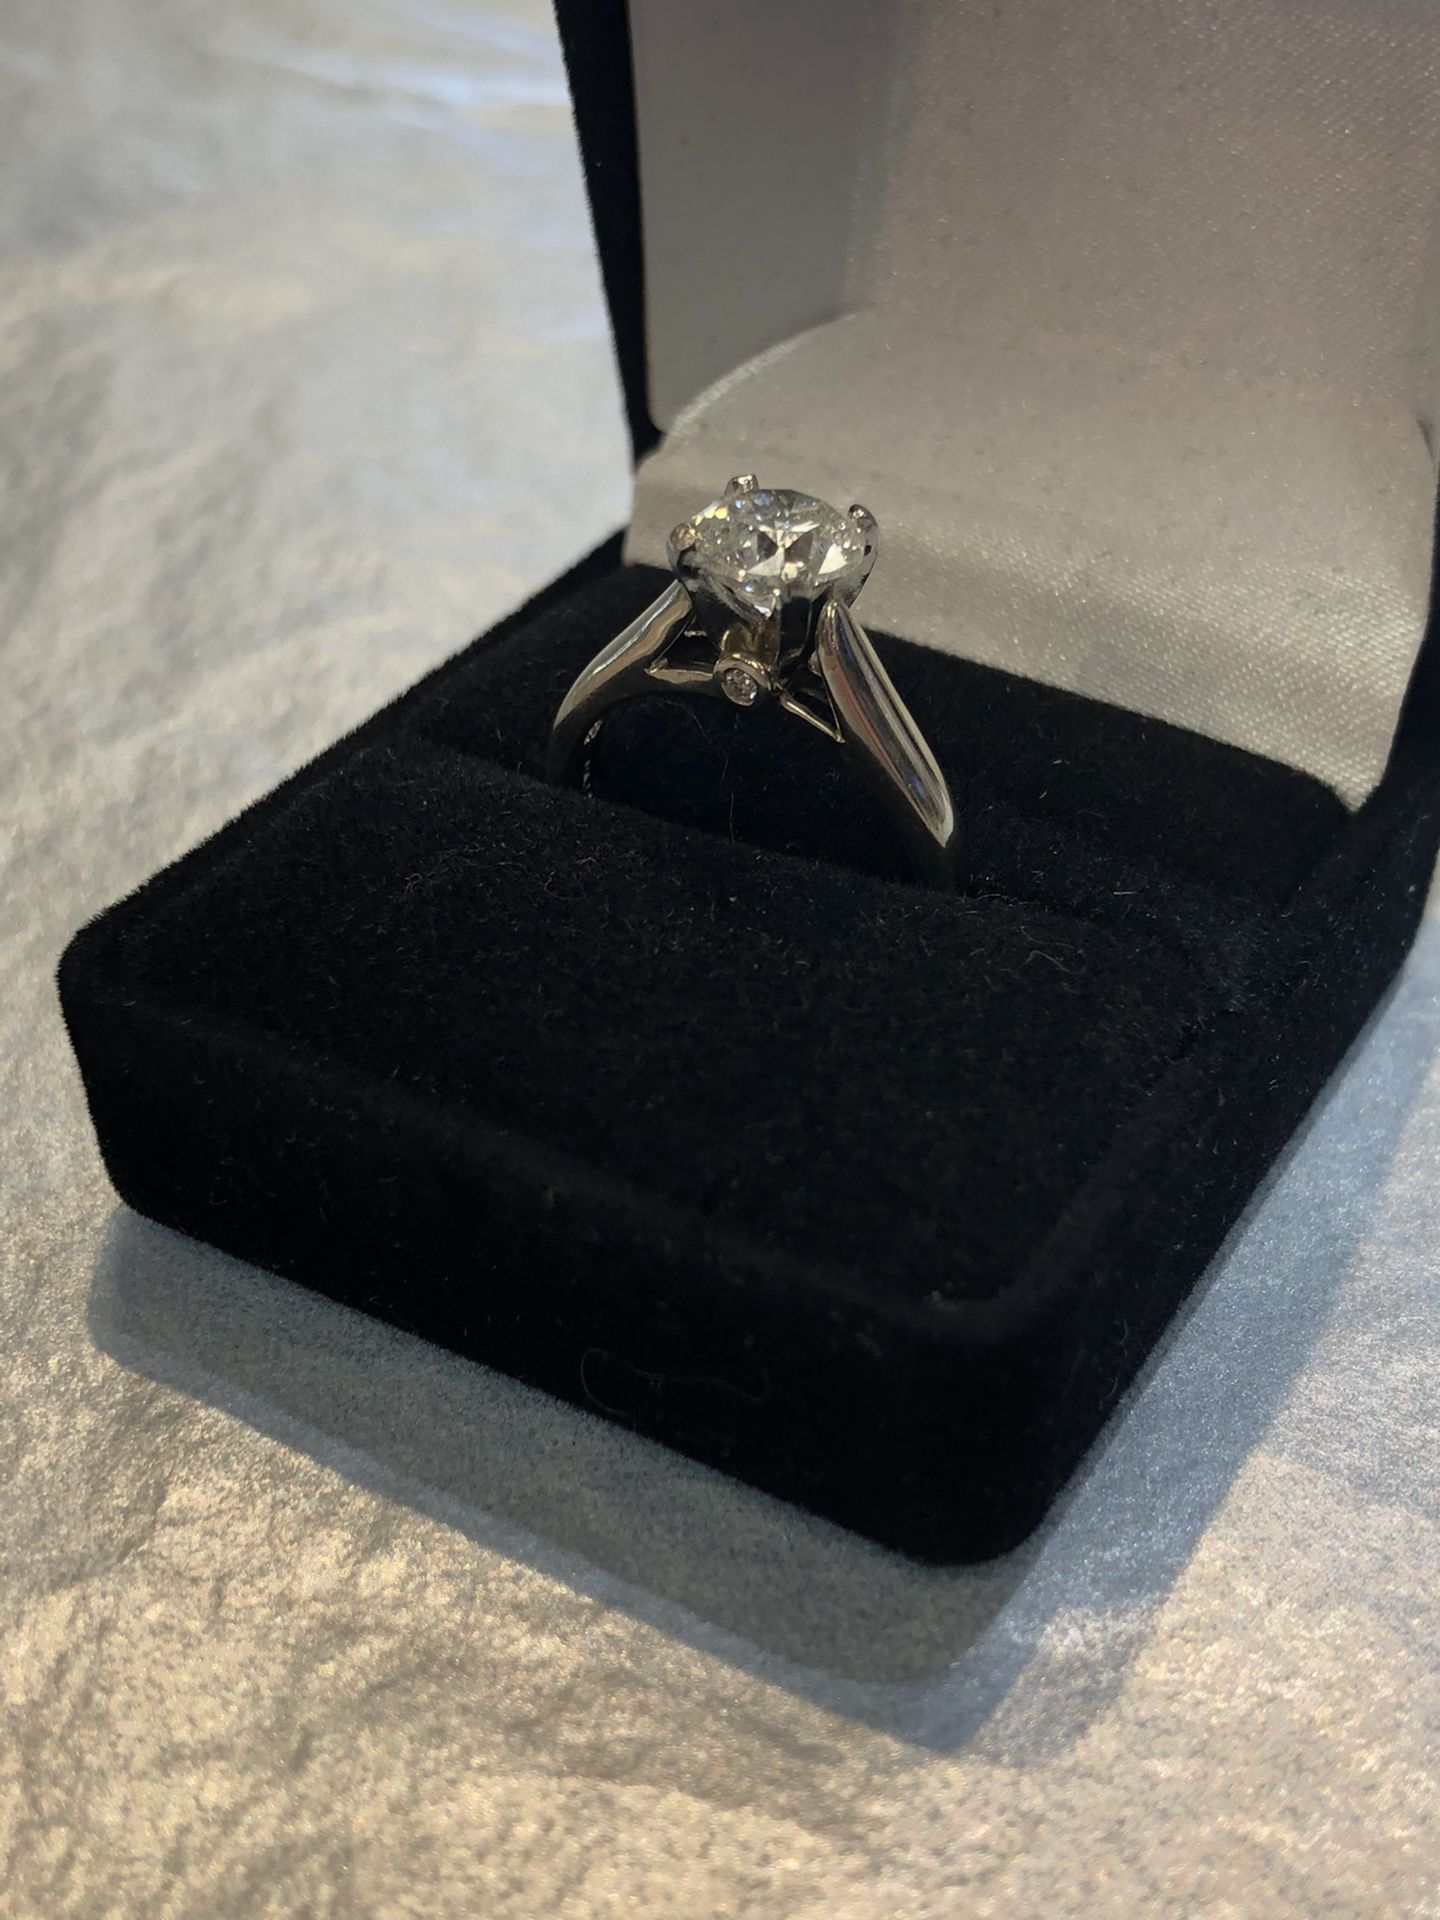 1.5 carat Diamond Ring in 14k White Gold setting